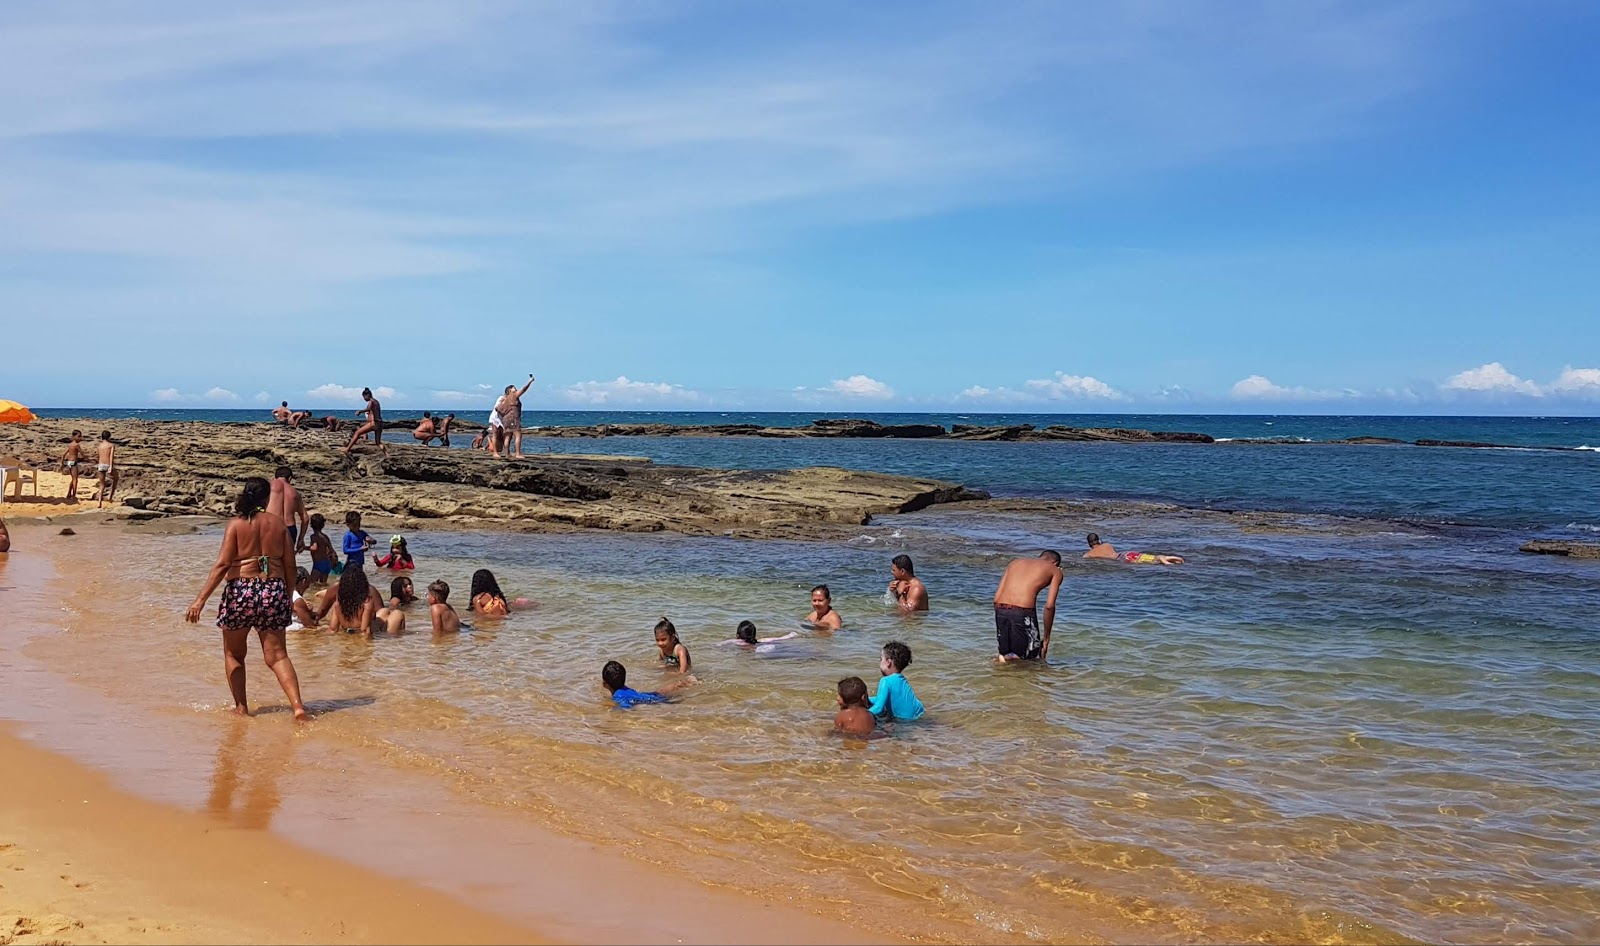 Praia Arakakai的照片 - 受到放松专家欢迎的热门地点